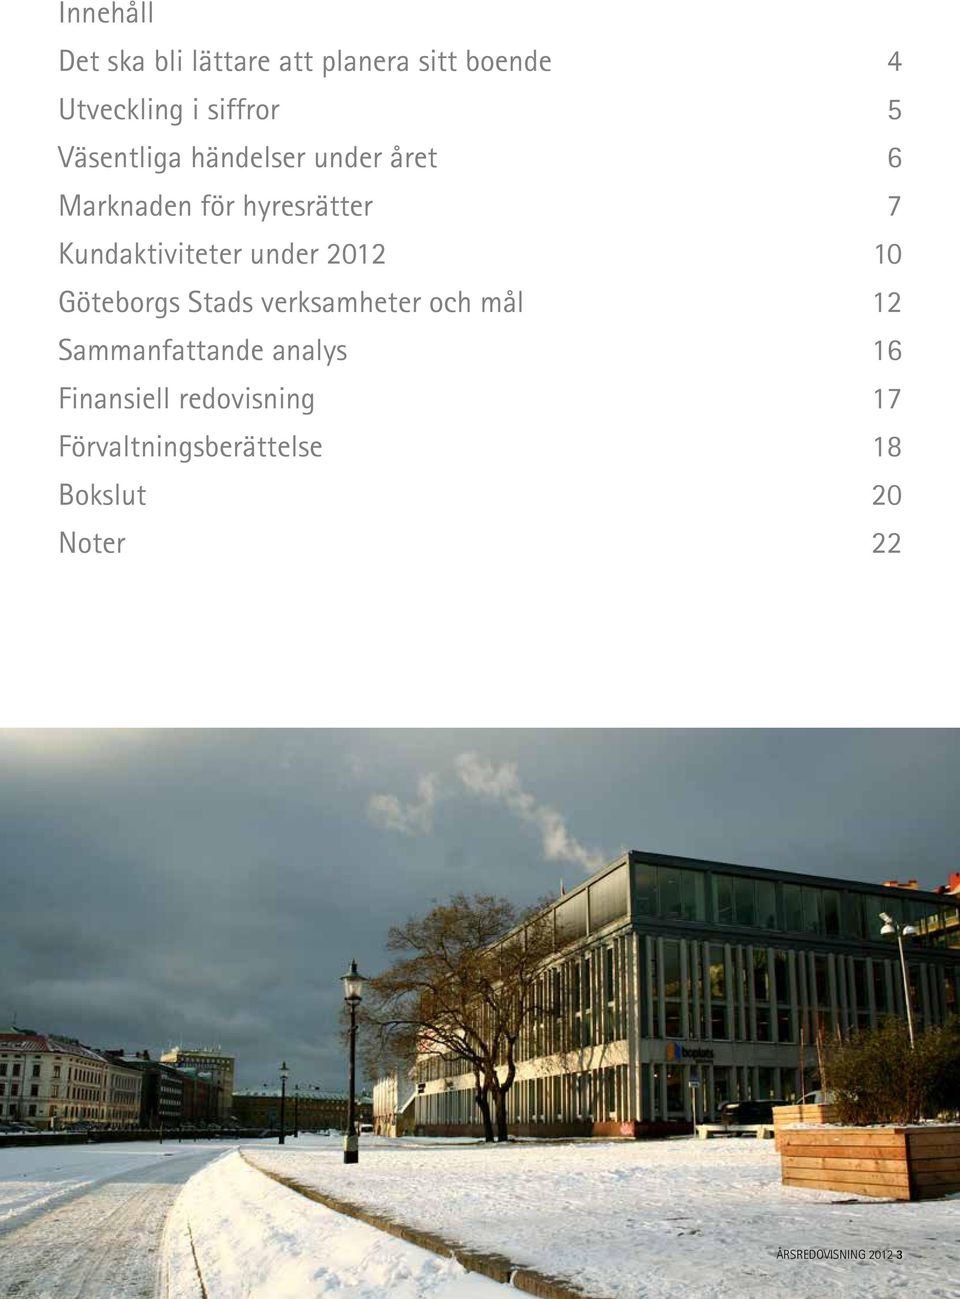 2012 10 Göteborgs Stads verksamheter och mål 12 Sammanfattande analys 16 Finansiell